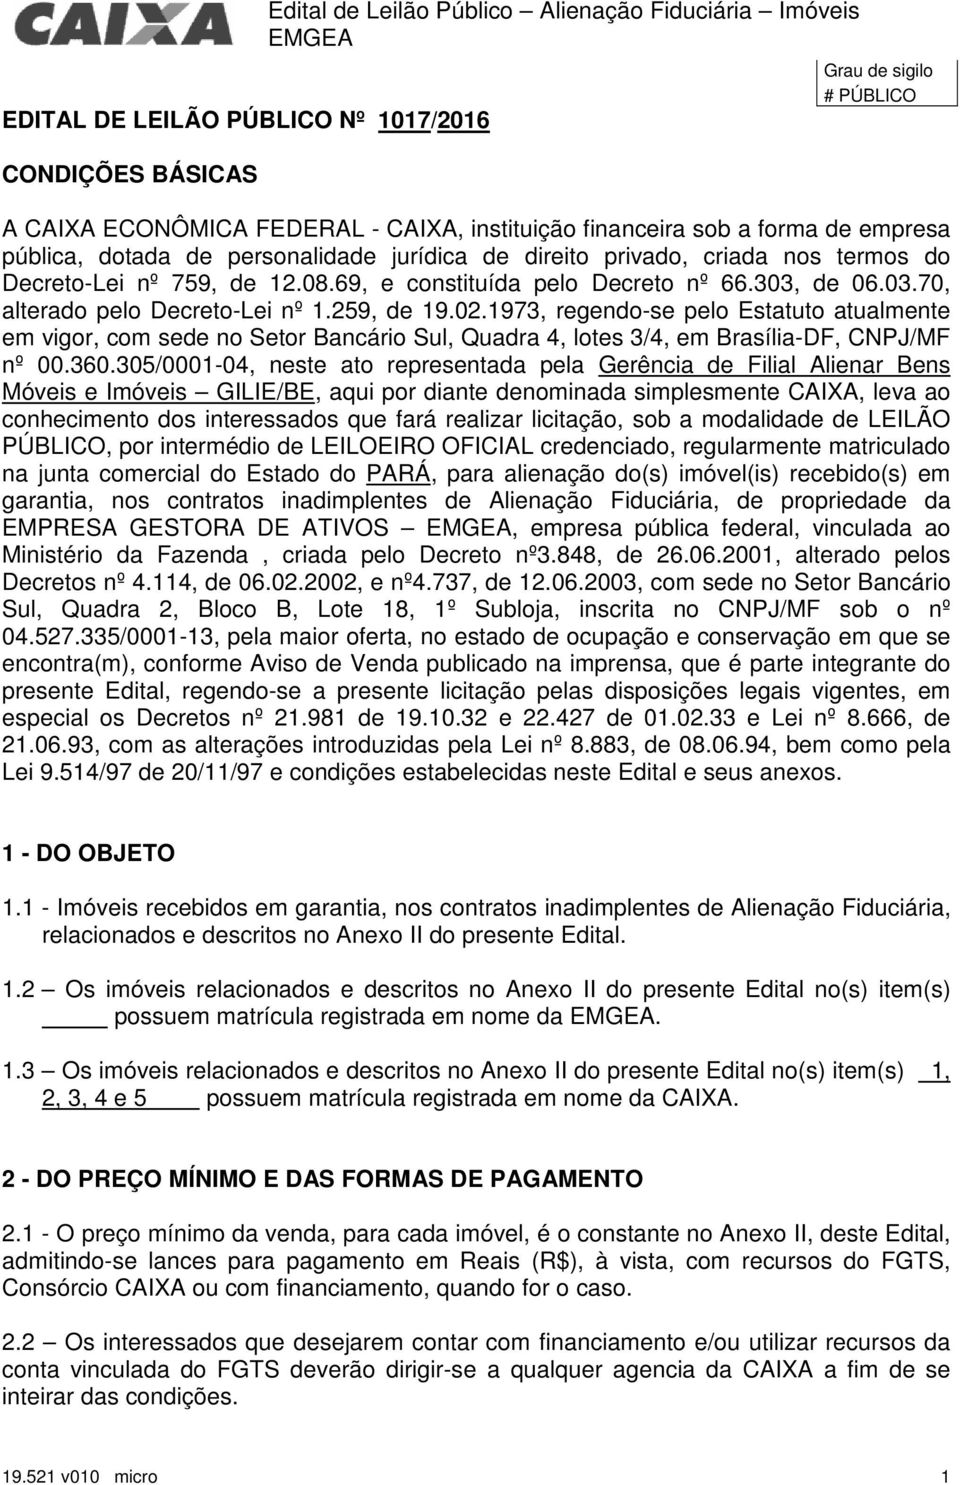 de 06.03.70, alterado pelo Decreto-Lei nº 1.259, de 19.02.1973, regendo-se pelo Estatuto atualmente em vigor, com sede no Setor Bancário Sul, Quadra 4, lotes 3/4, em Brasília-DF, CNPJ/MF nº 00.360.